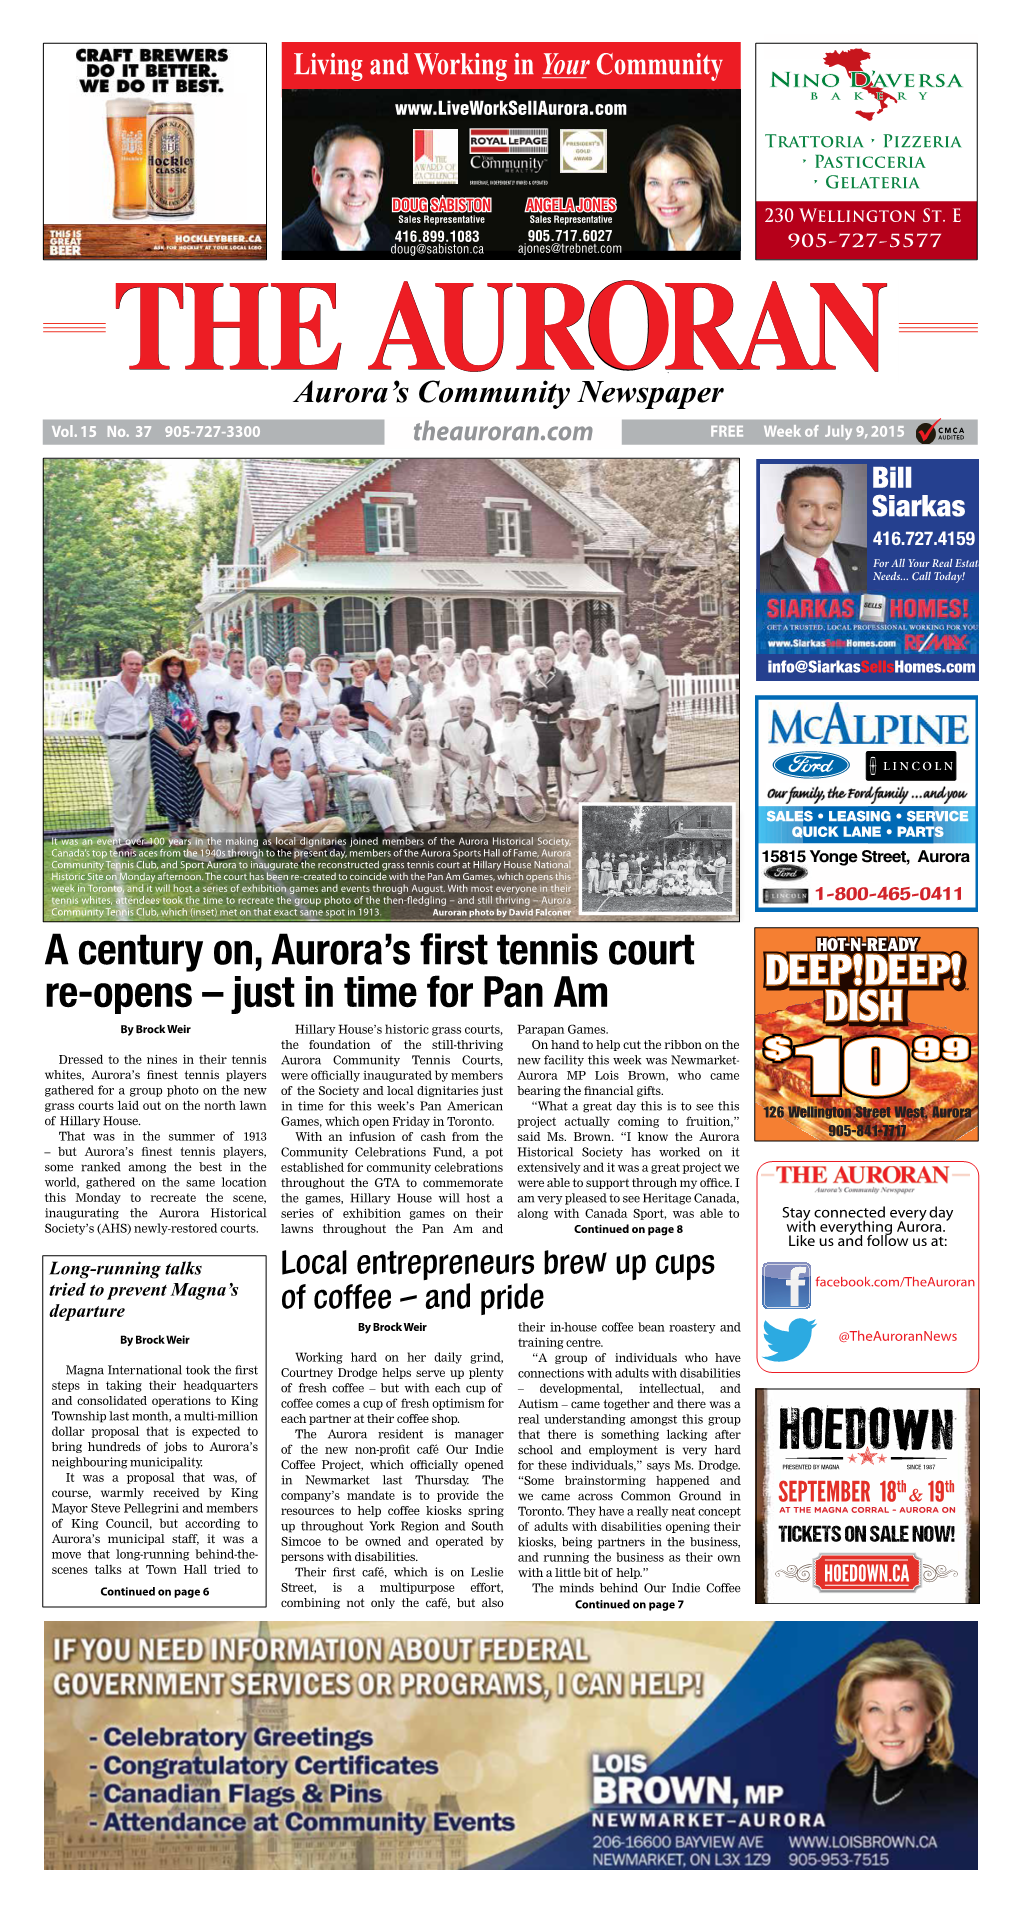 A Century On, Aurora's First Tennis Court Re-Opens